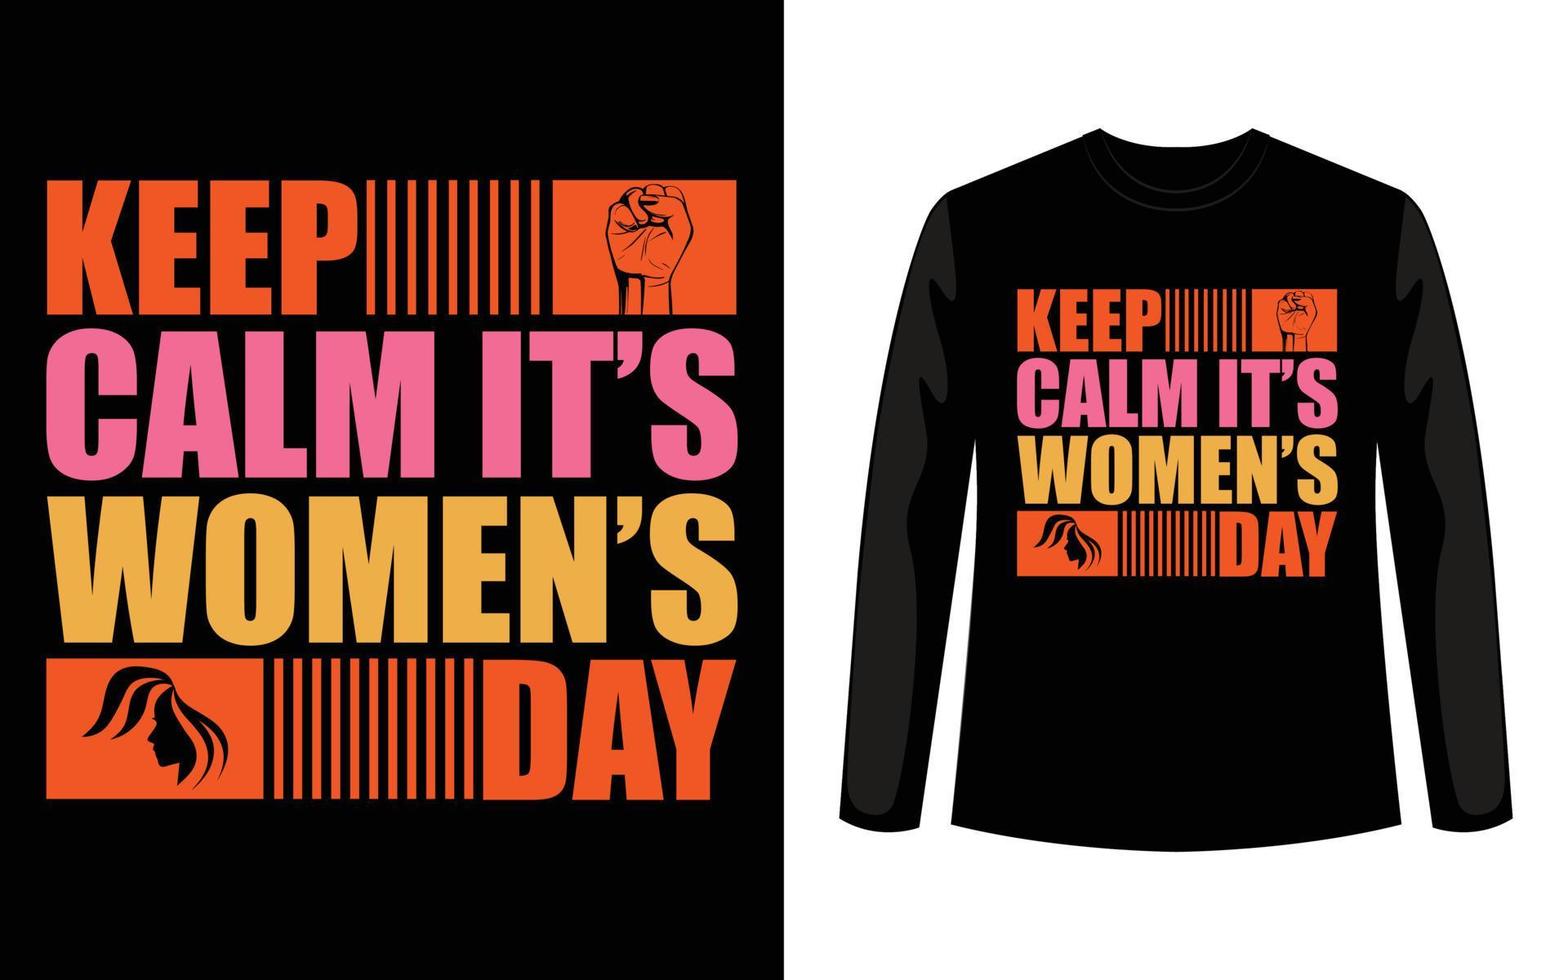 speciaal t-shirtontwerp voor internationale vrouwendag. vector